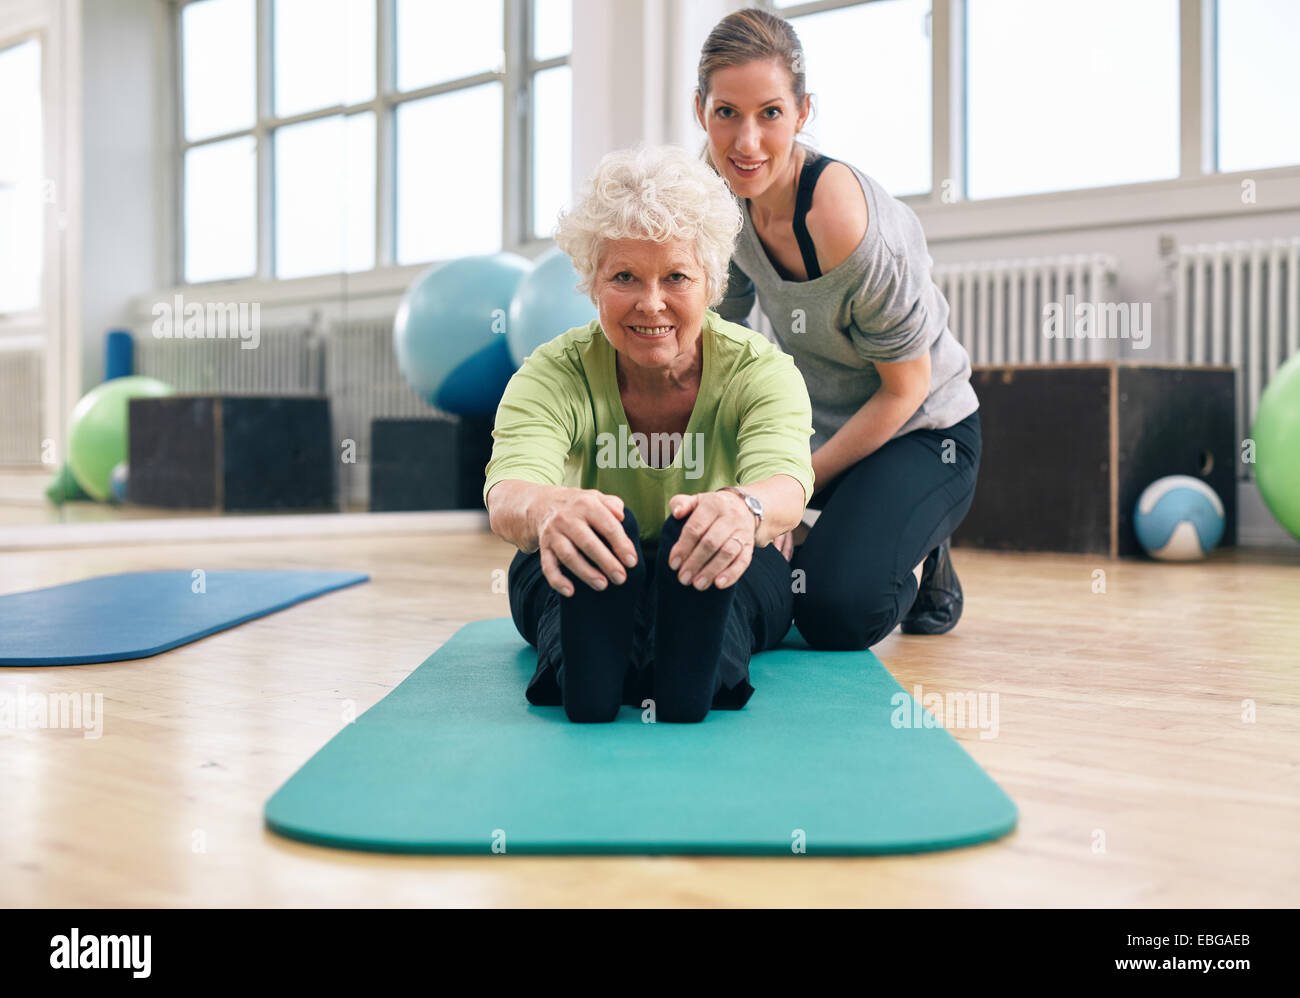 Ältere Frau, die auf der Trainingsmatte sitzt, sich nach vorne beugt und ihre Zehen mit ihrem persönlichen Trainer berührt. Fitnesstraining Stockfoto